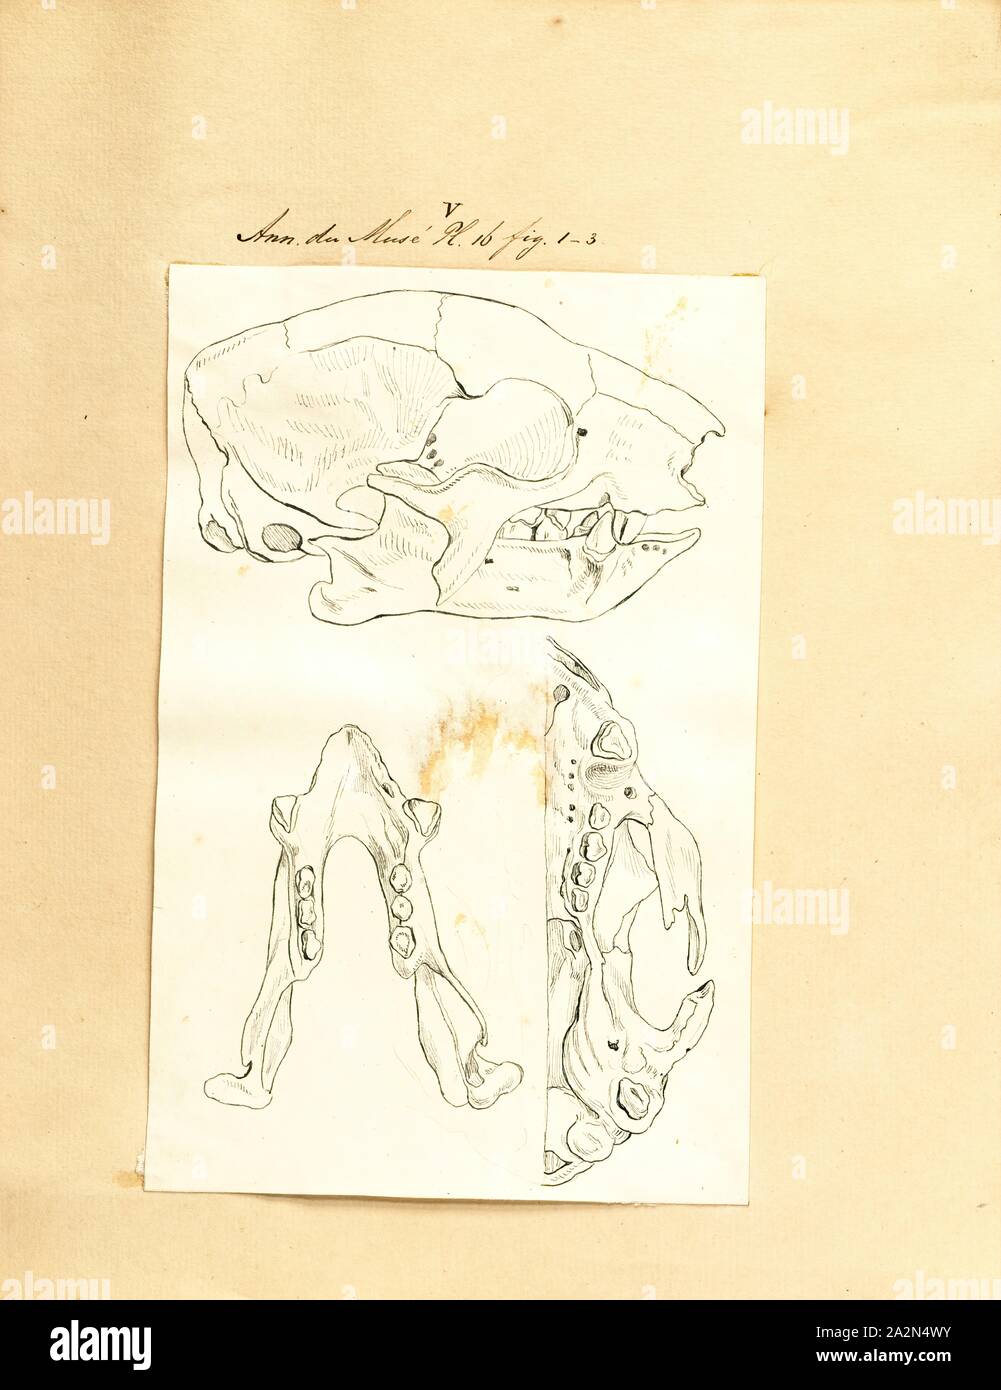 Megatherium cuvierii, stampa Megatherium era un genere di elefante-massa di dimensioni bradipi endemica in Sud America, a volte chiamato il gigante massa bradipo, quella vissuta dagli inizi del Pliocene attraverso la fine del Pleistocene.Solo pochi altri mammiferi terrestri eguagliato o superato Megatherium dimensioni, come ad esempio grandi proboscideans (es., Elefanti) e il gigante del rinoceronte Paraceratherium. Megatherium fu scoperta per la prima volta nel 1788 sulla banca del fiume di Luján in Argentina, holotype il campione è stato poi spediti in Spagna l'anno seguente in cui ha catturato l'attenzione del paleontologo stimato Foto Stock